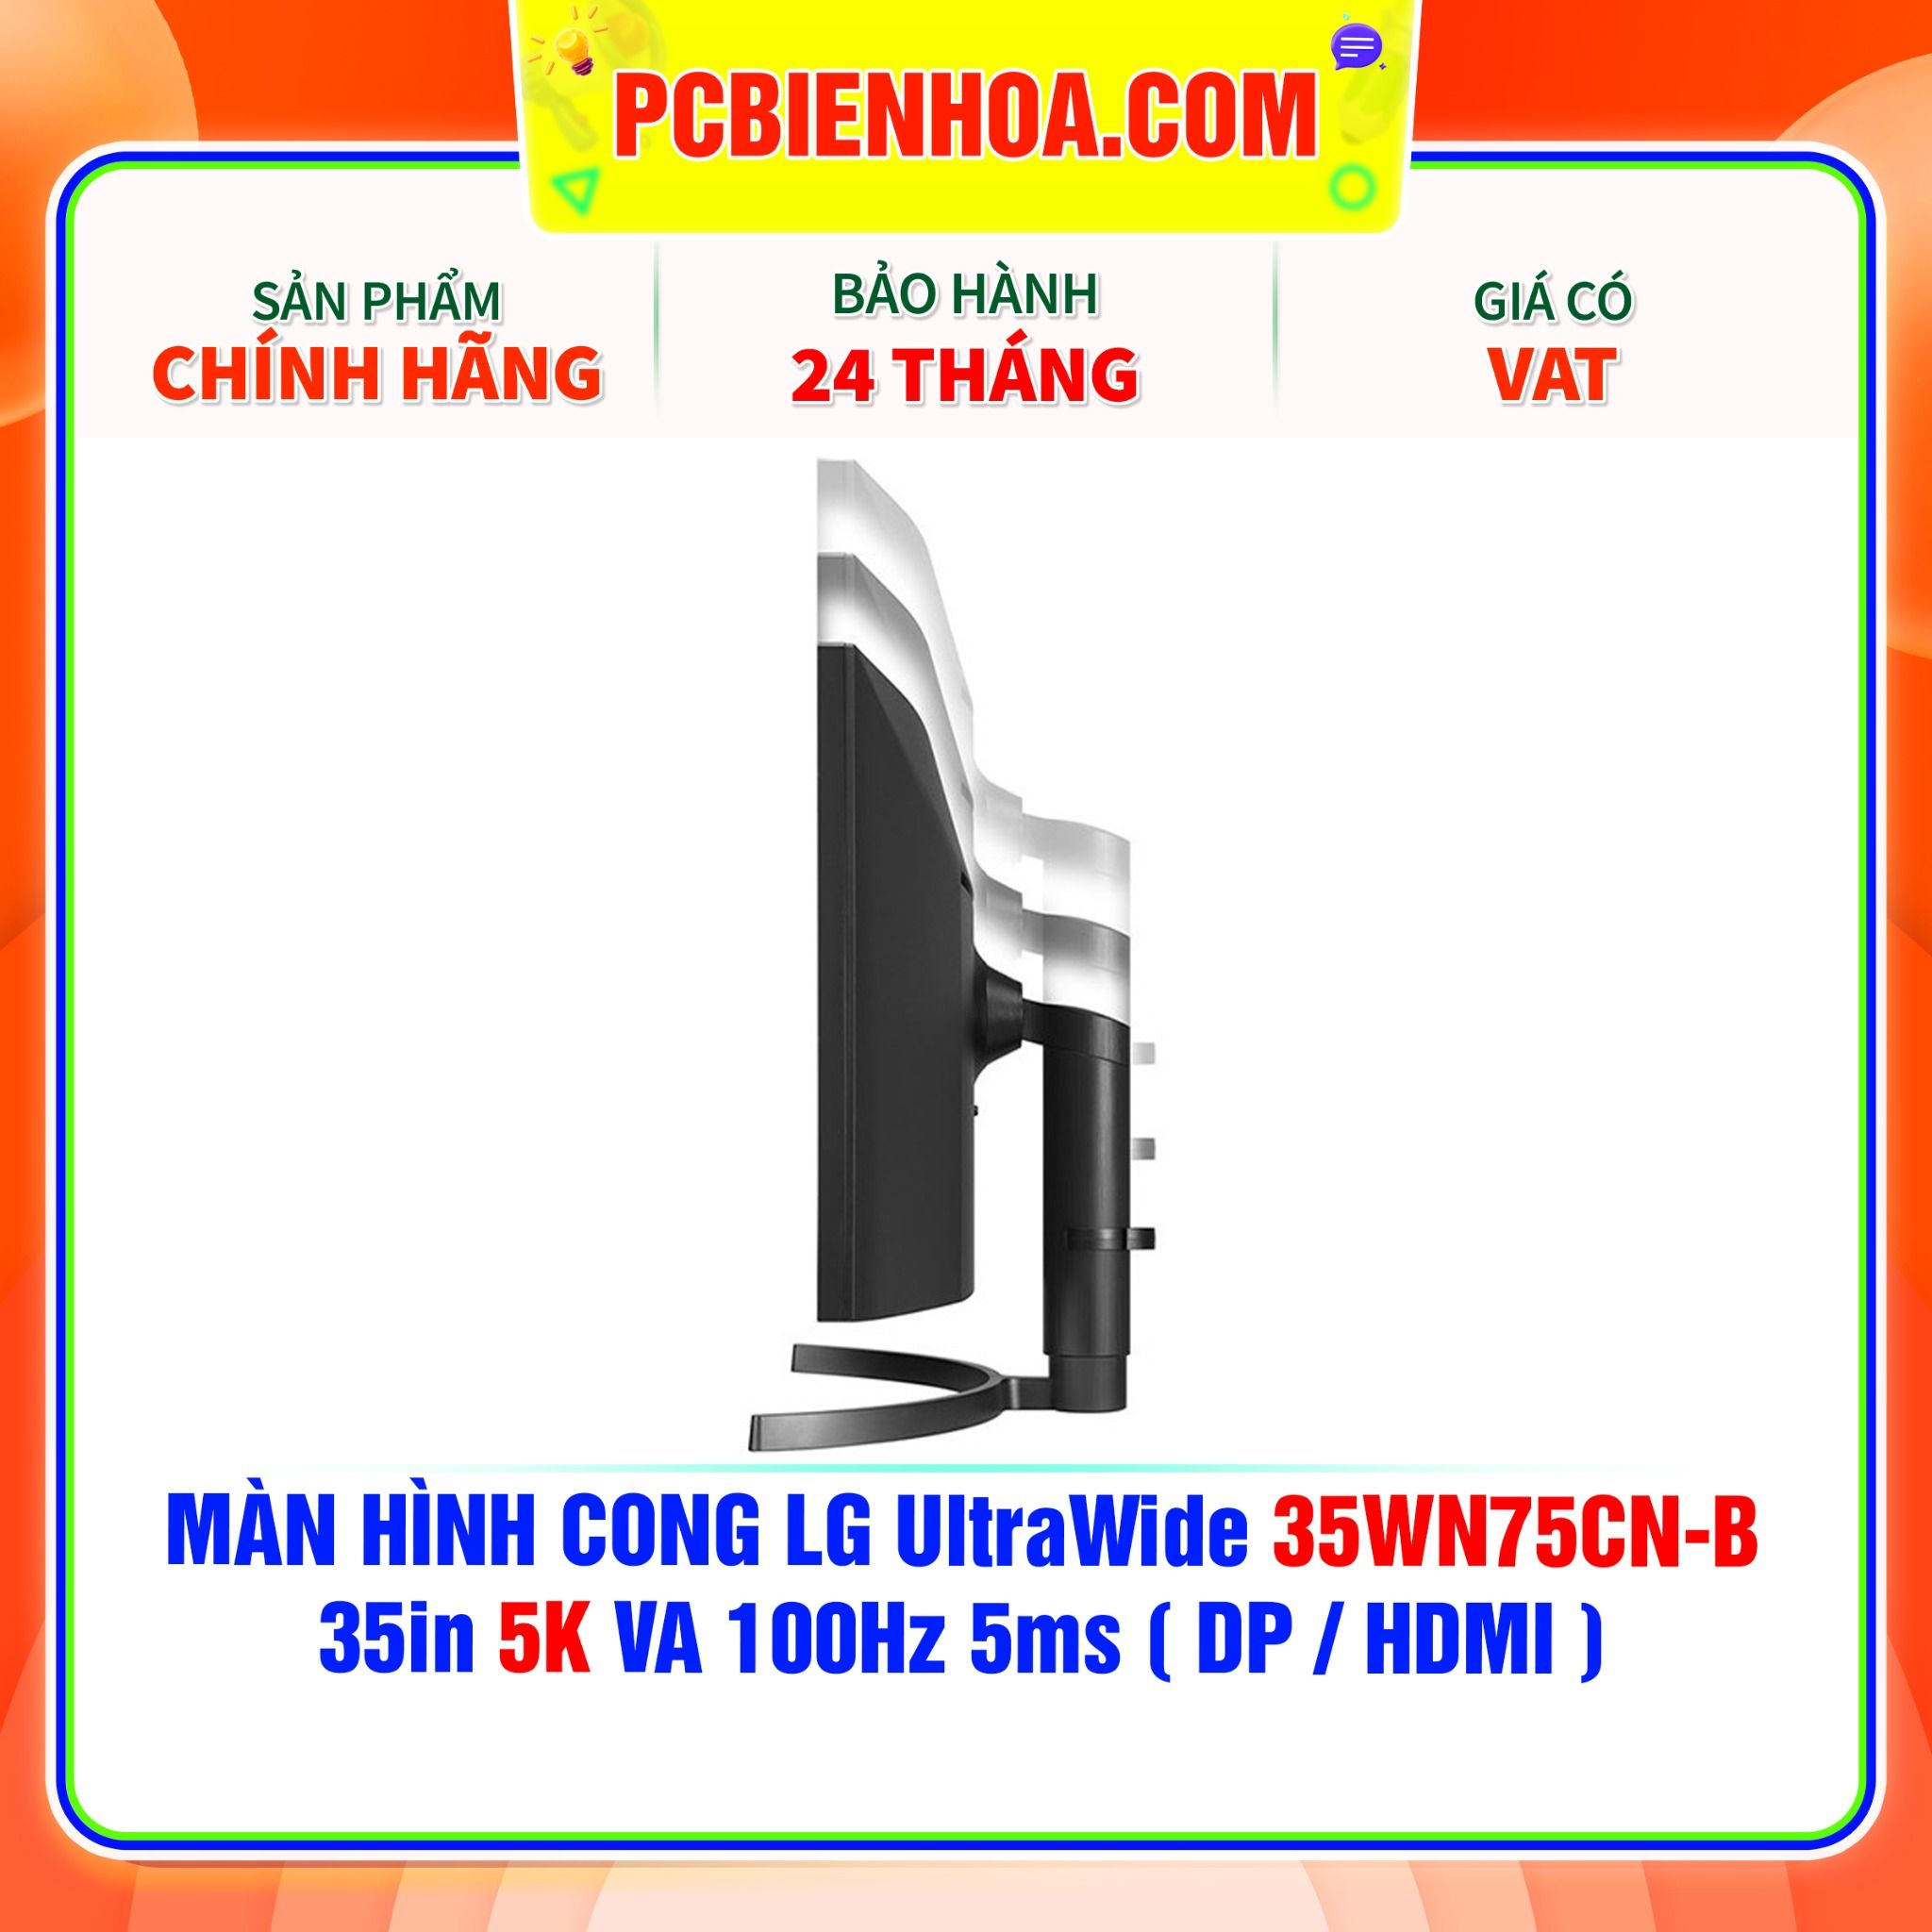  MÀN HÌNH CONG LG UltraWide 35WN75CN-B 35in 5K VA 100Hz 5ms ( DP / HDMI ) 